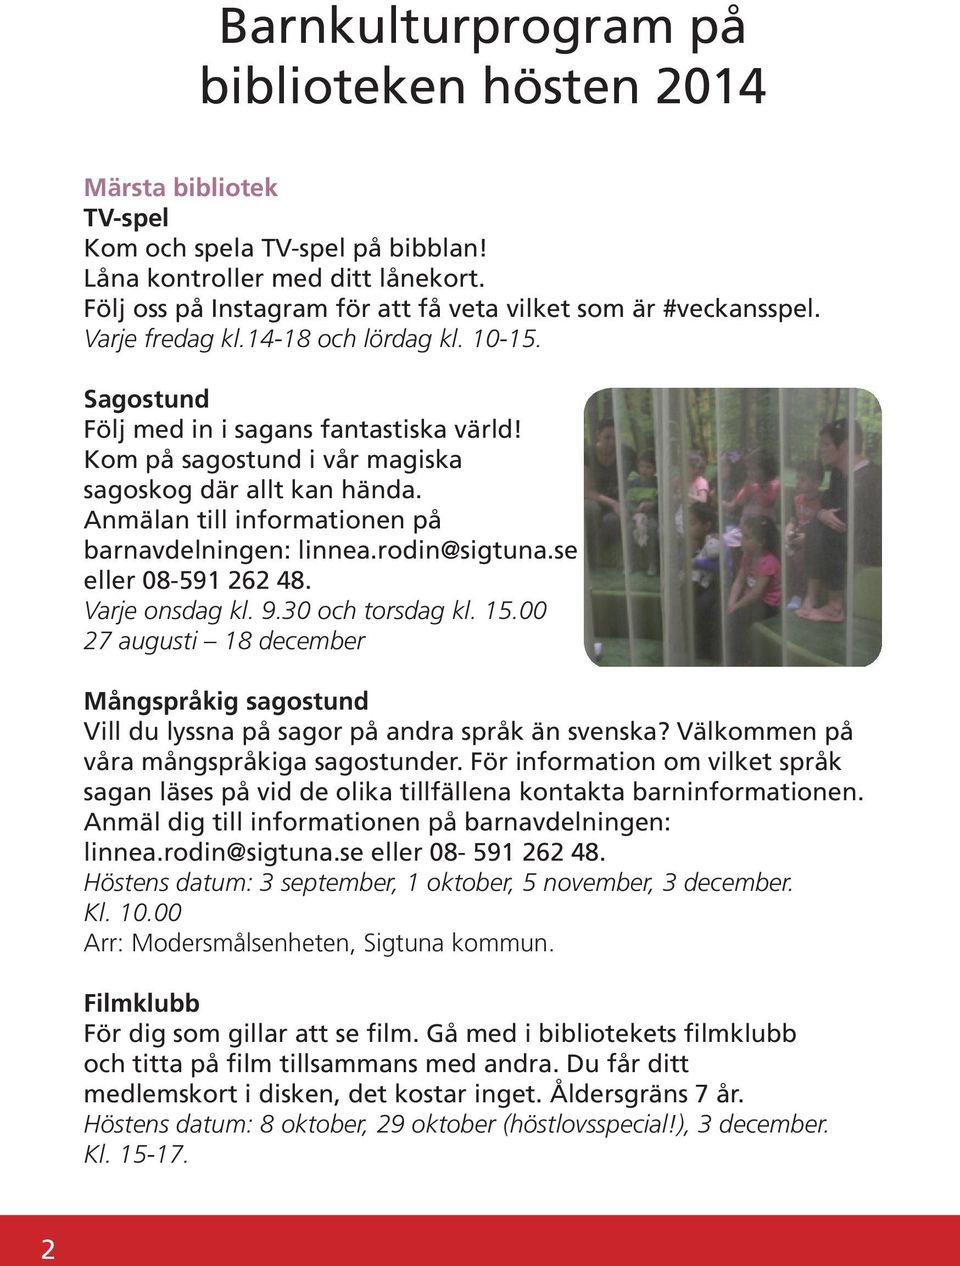 Kom på sagostund i vår magiska sagoskog där allt kan hända. Anmälan till informationen på barnavdelningen: linnea.rodin@sigtuna.se eller 08-591 262 48. Varje onsdag kl. 9.30 och torsdag kl. 15.